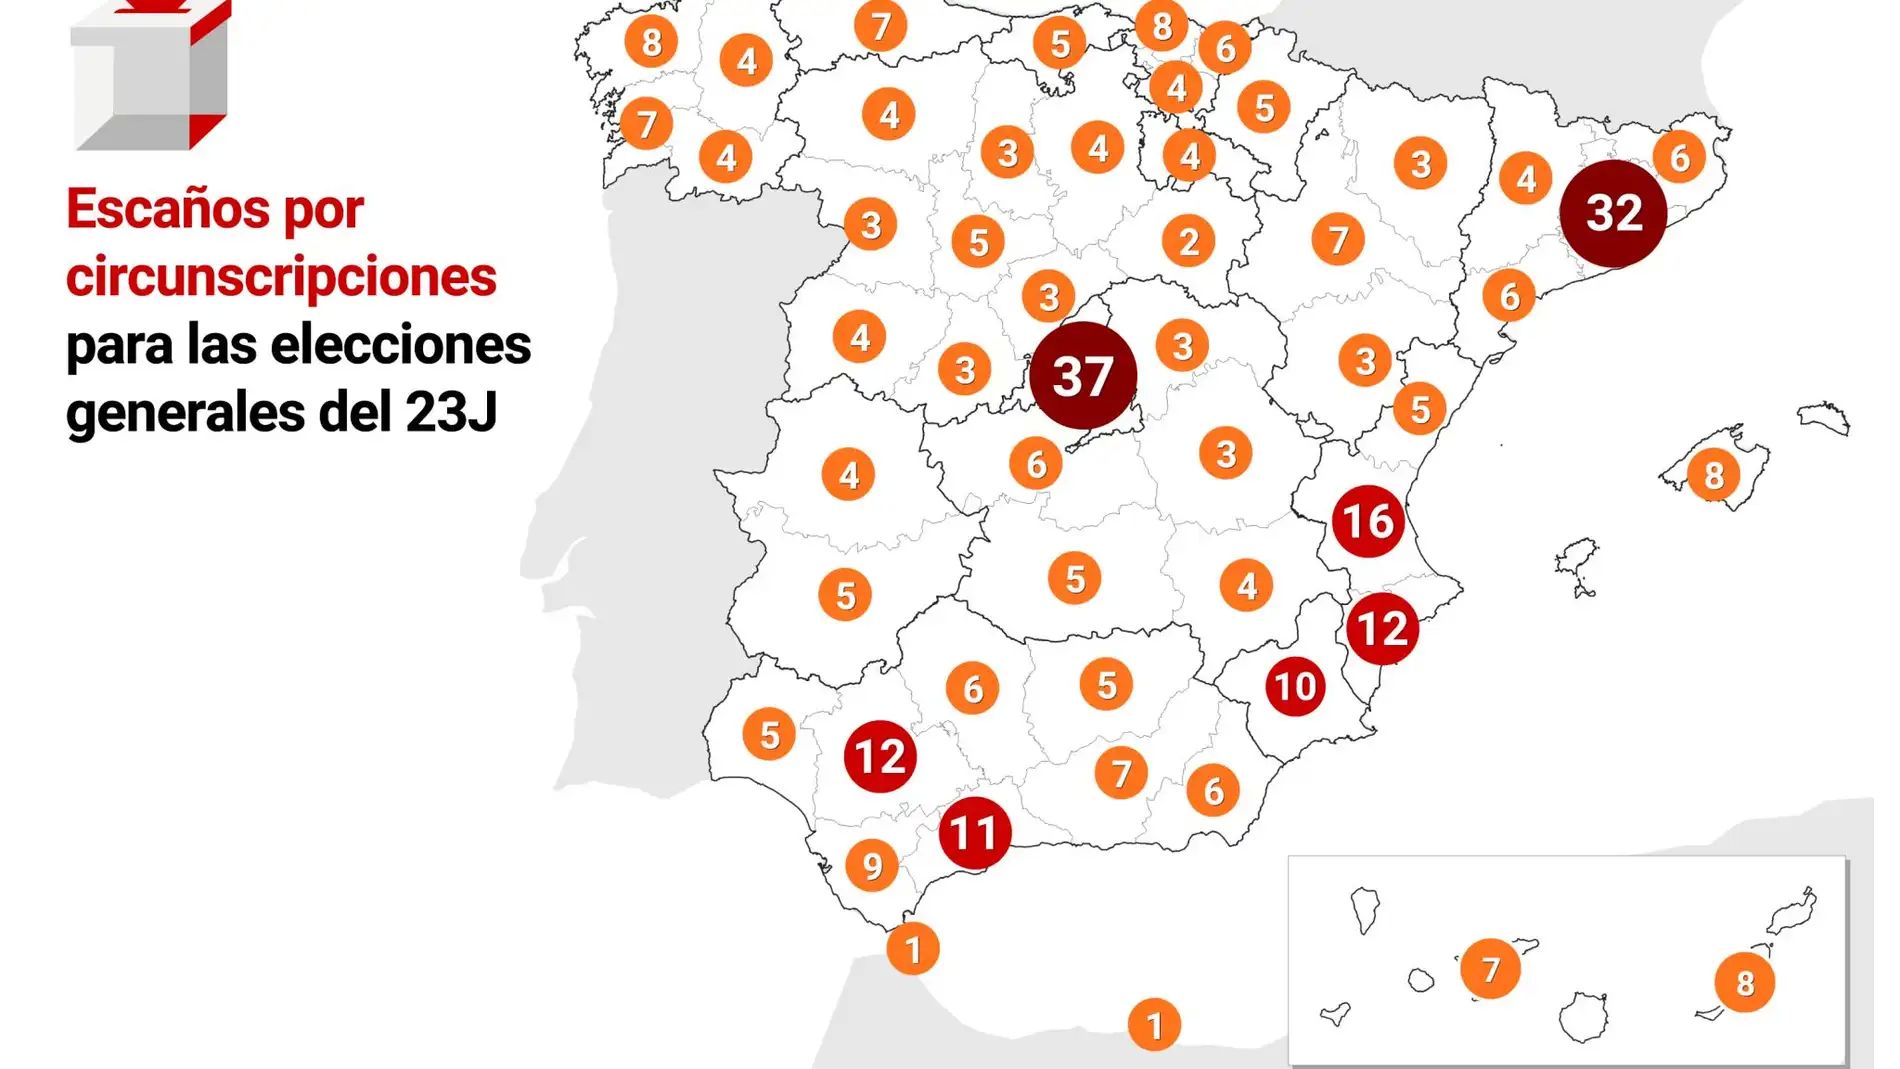 ntos-votos-vale-escano-mapa-diputados-provincia_98.jpg